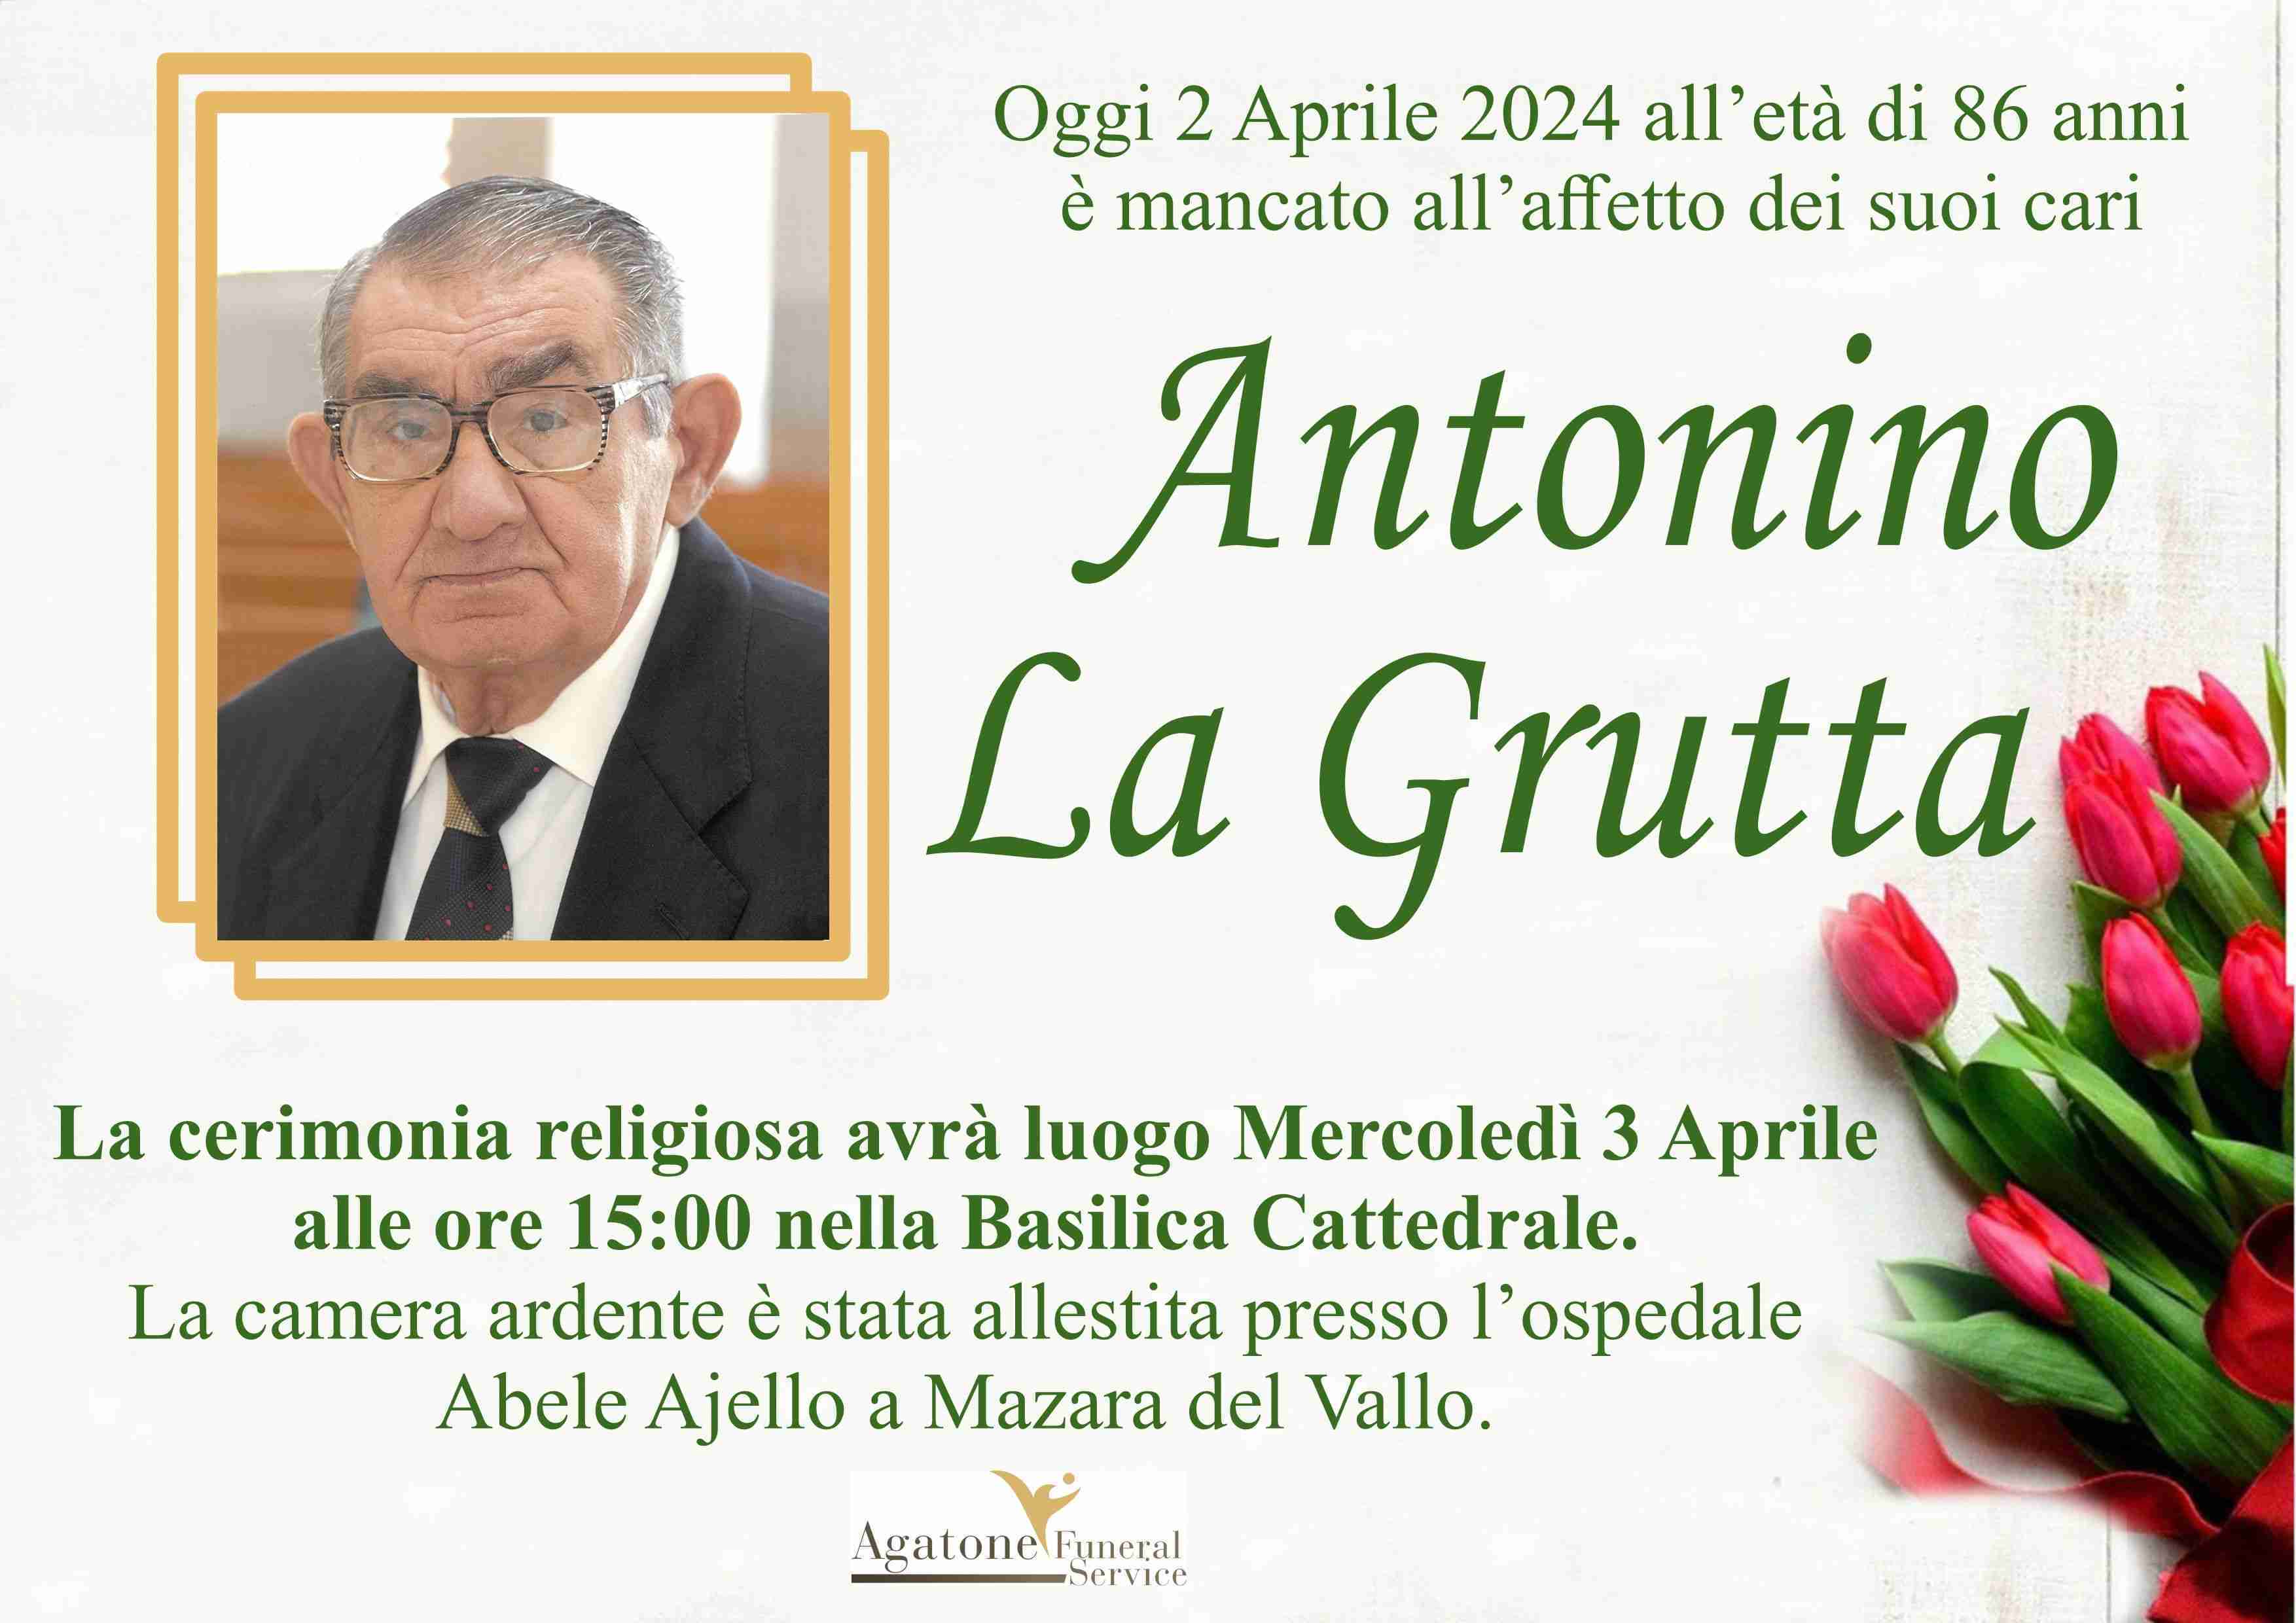 Antonino La Grutta